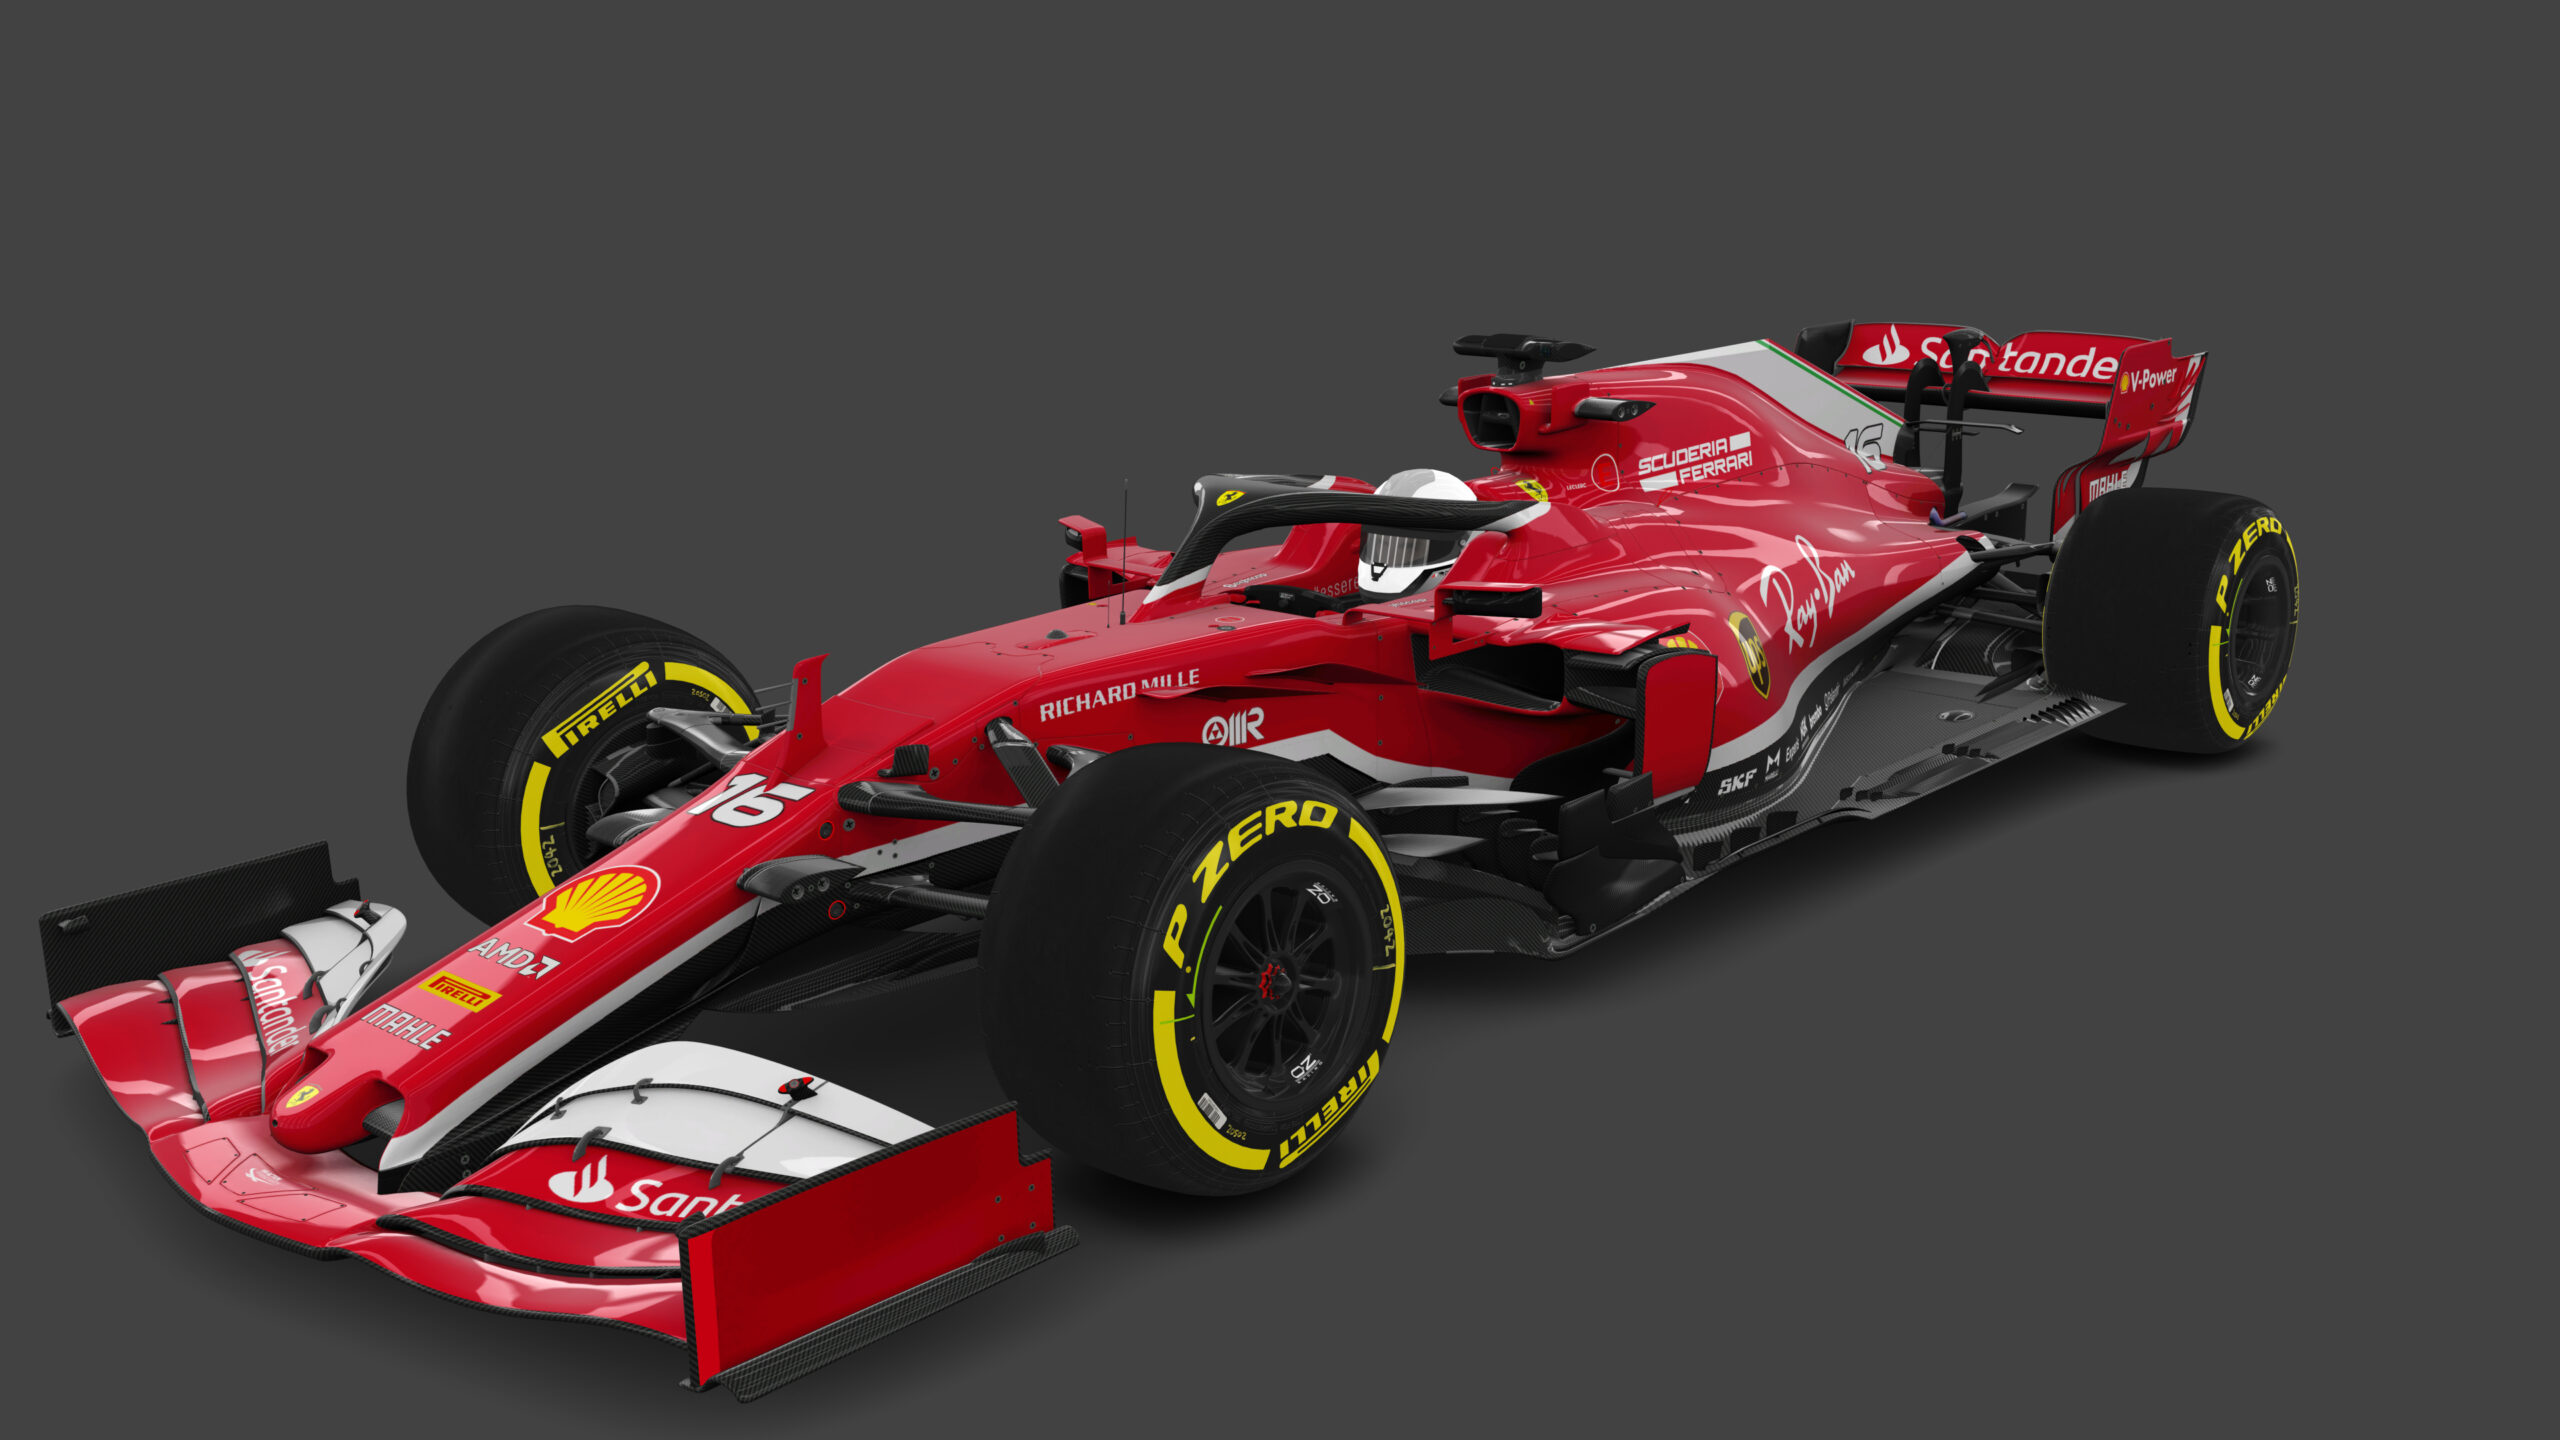 Scuderia Ferrari [16 Charles Leclerc]